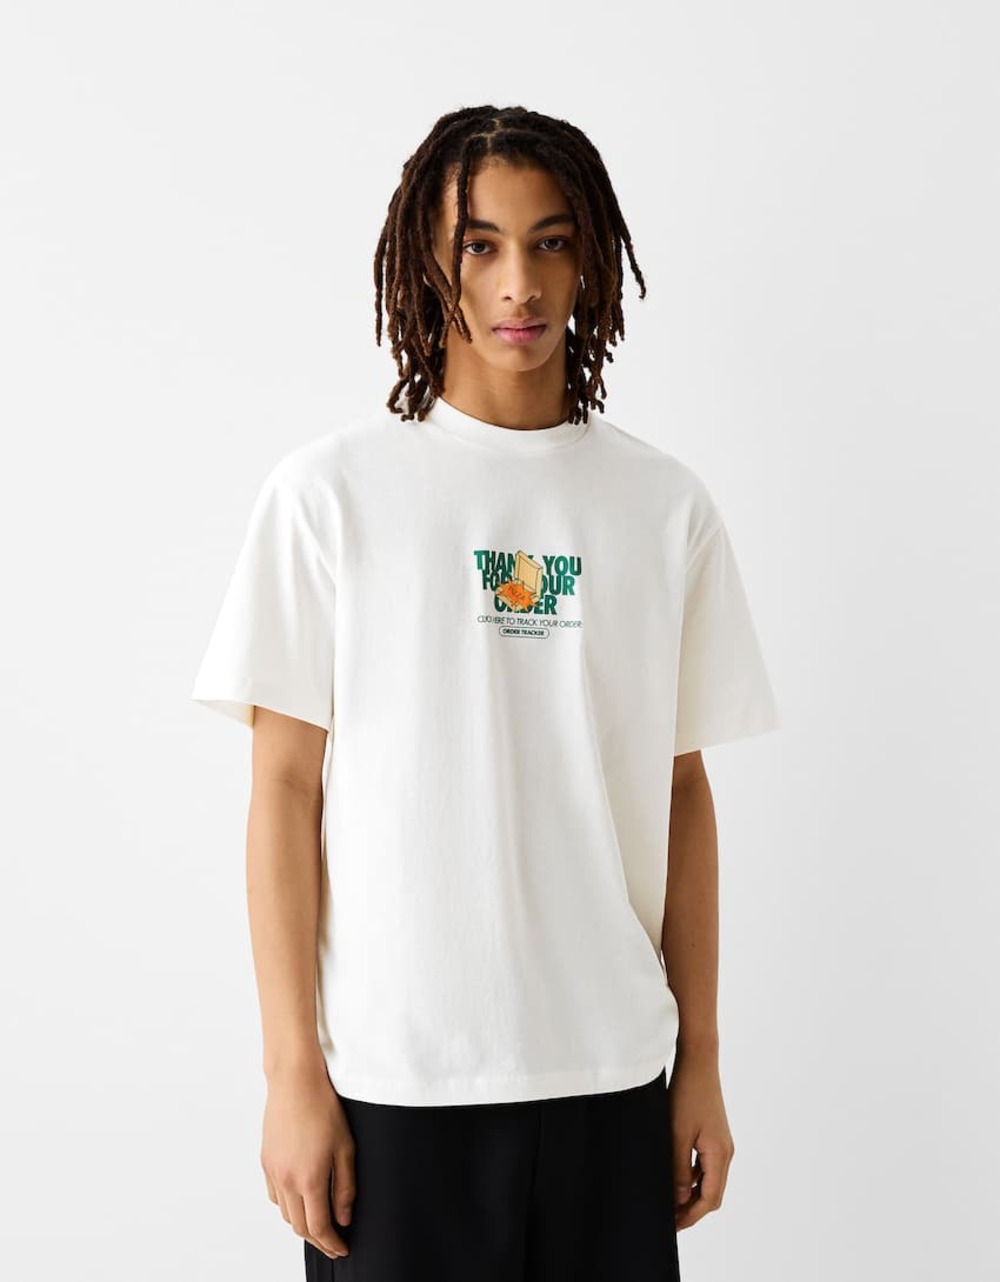 Printed T Shirts 6 Najbolje majice sa printom koje ćete rado nositi ove sezone